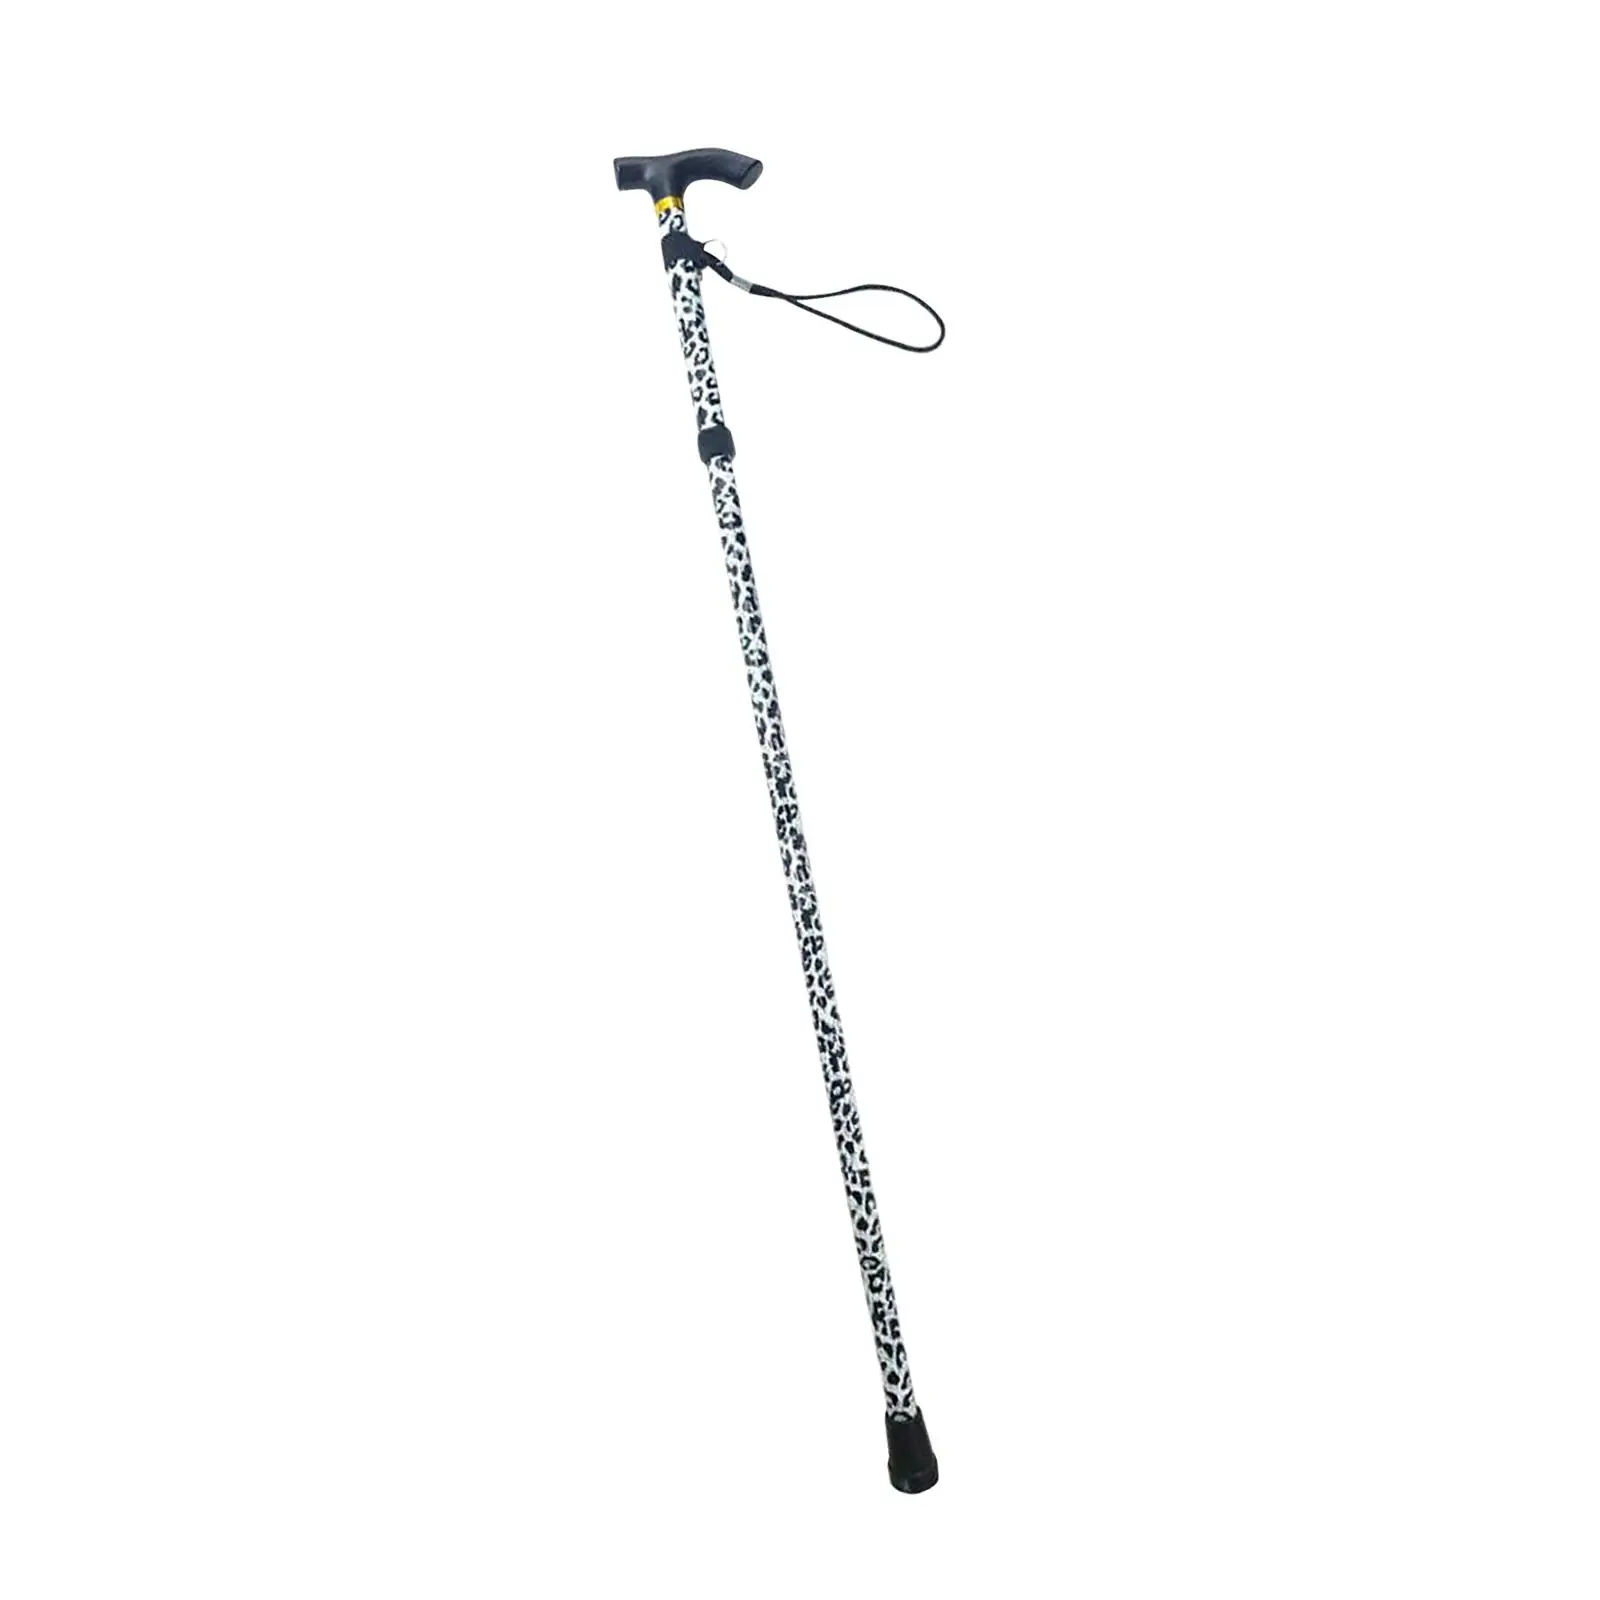 Trekking Poles Foldable Adjustable Shock Absorbing Metal Cane Walking Sticks for Elderly Old Man Mountaining Backpacking Walking